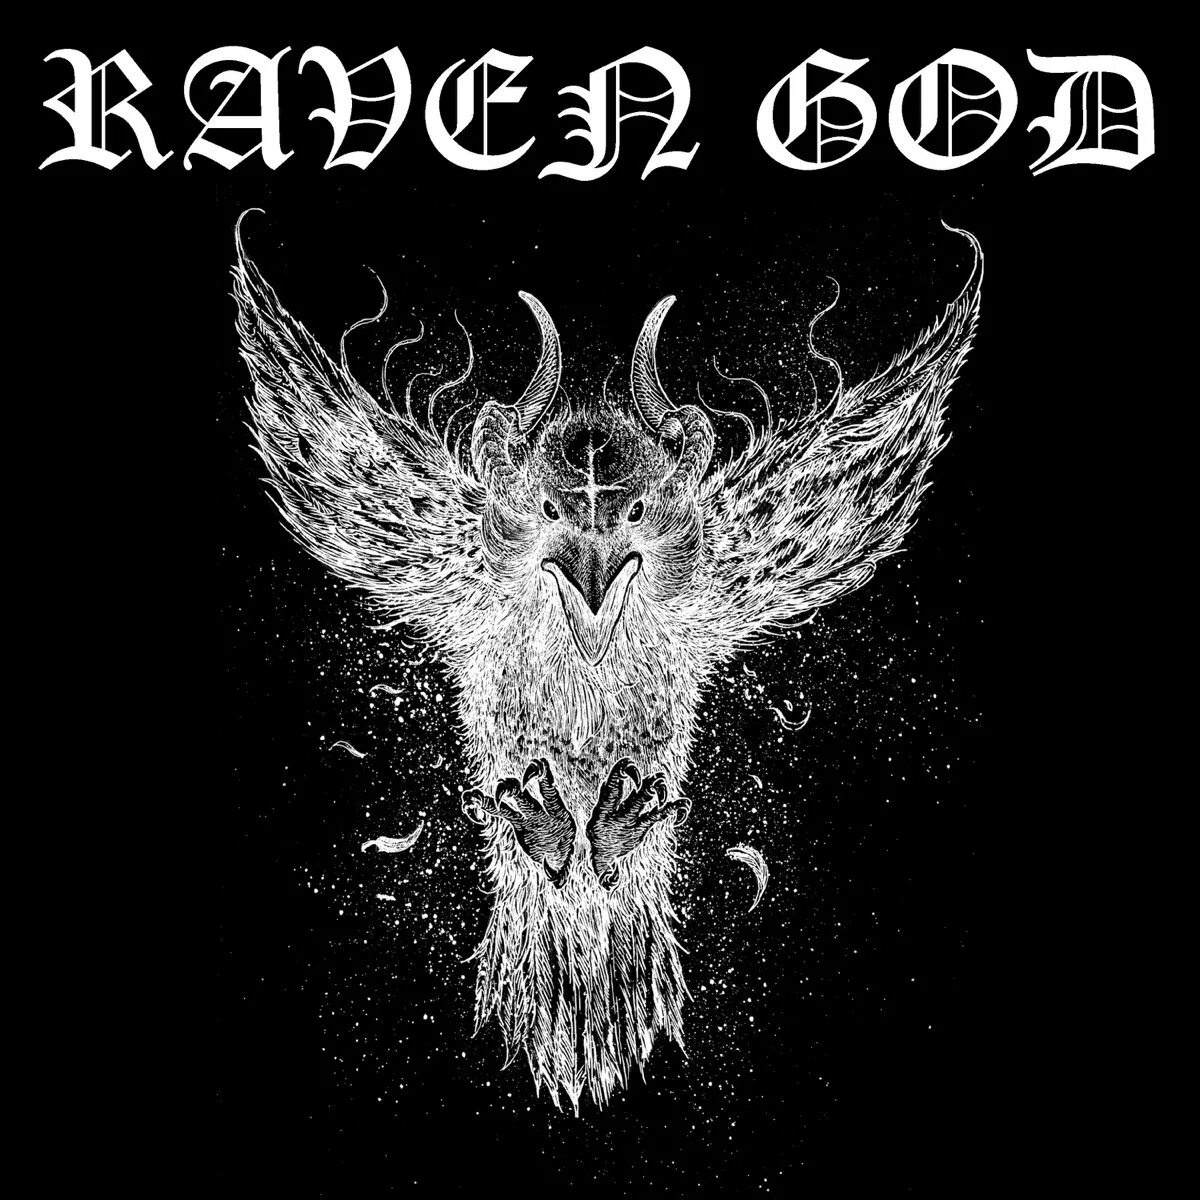 Rave god. Raven God. Raven - 2020 - Metal City. Count Raven Band.